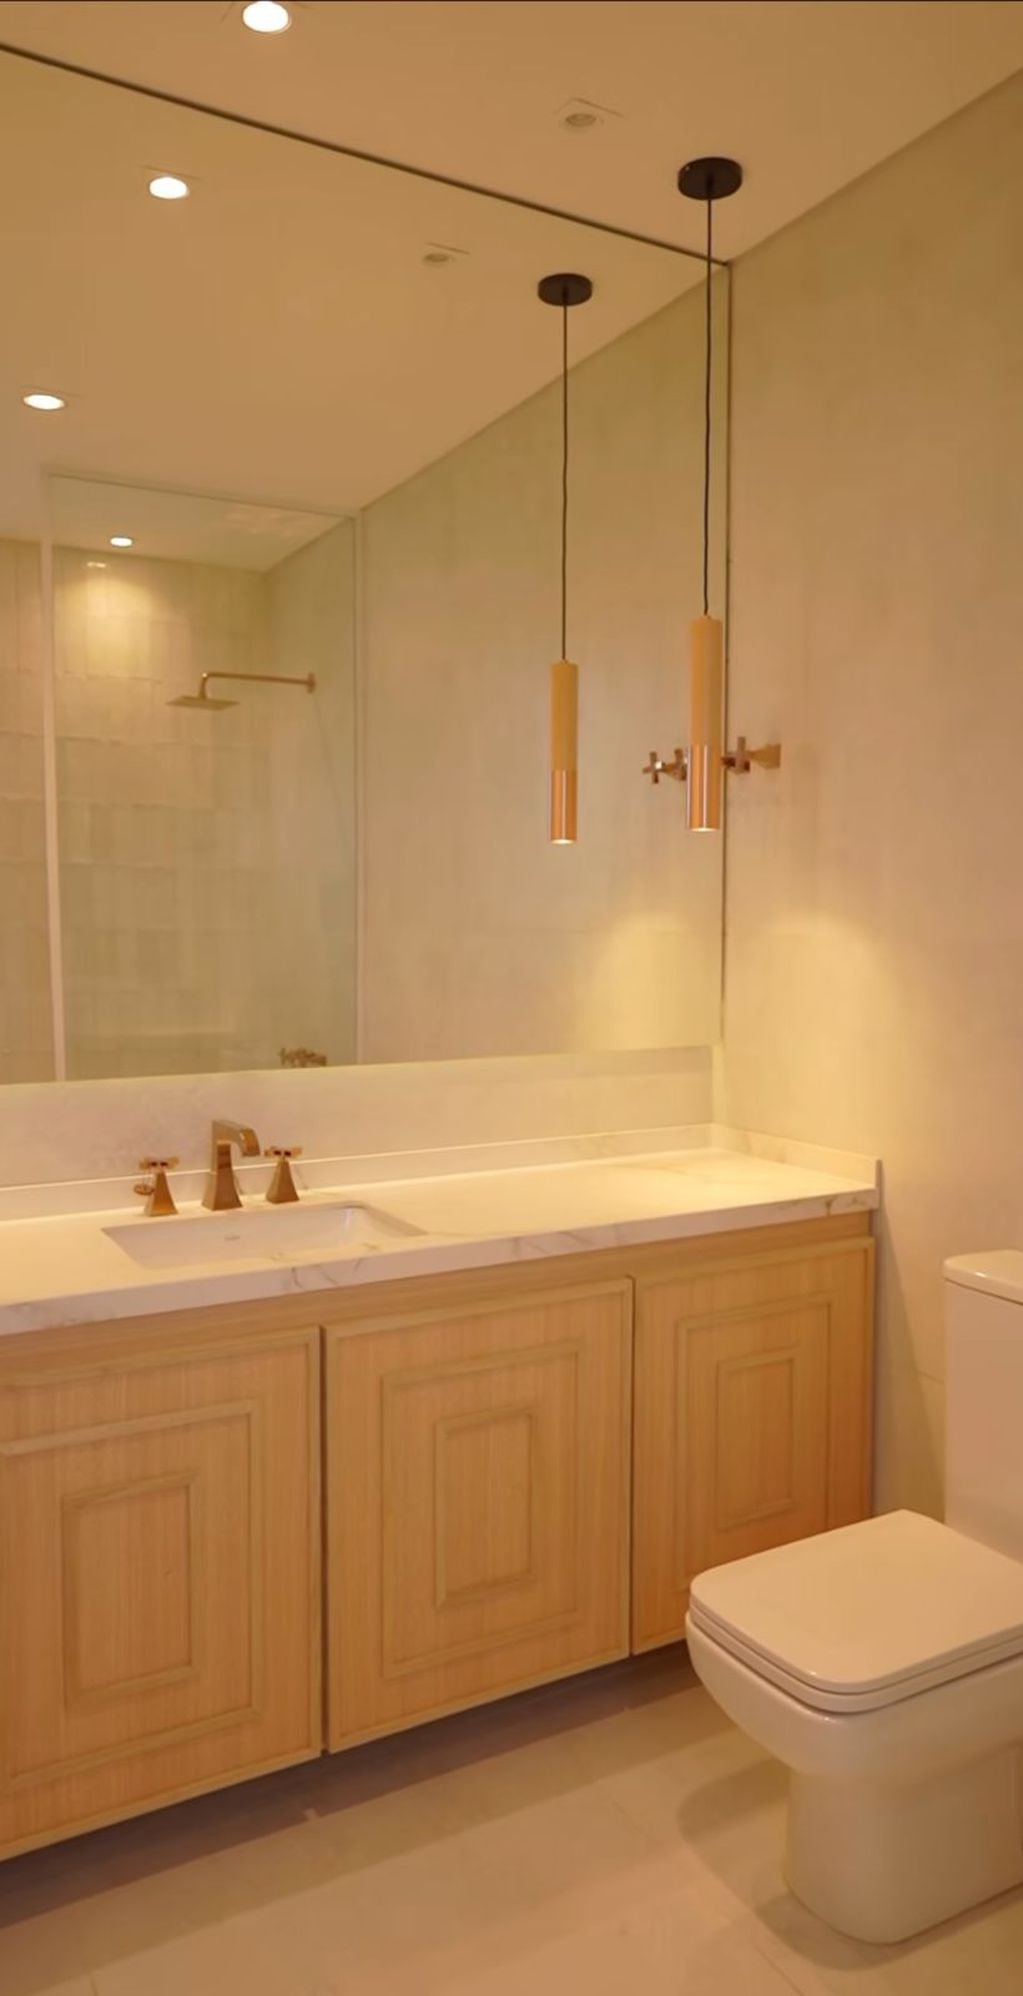 Así son los baños de la nueva casa de Lourdes Sánchez. Captura del video.